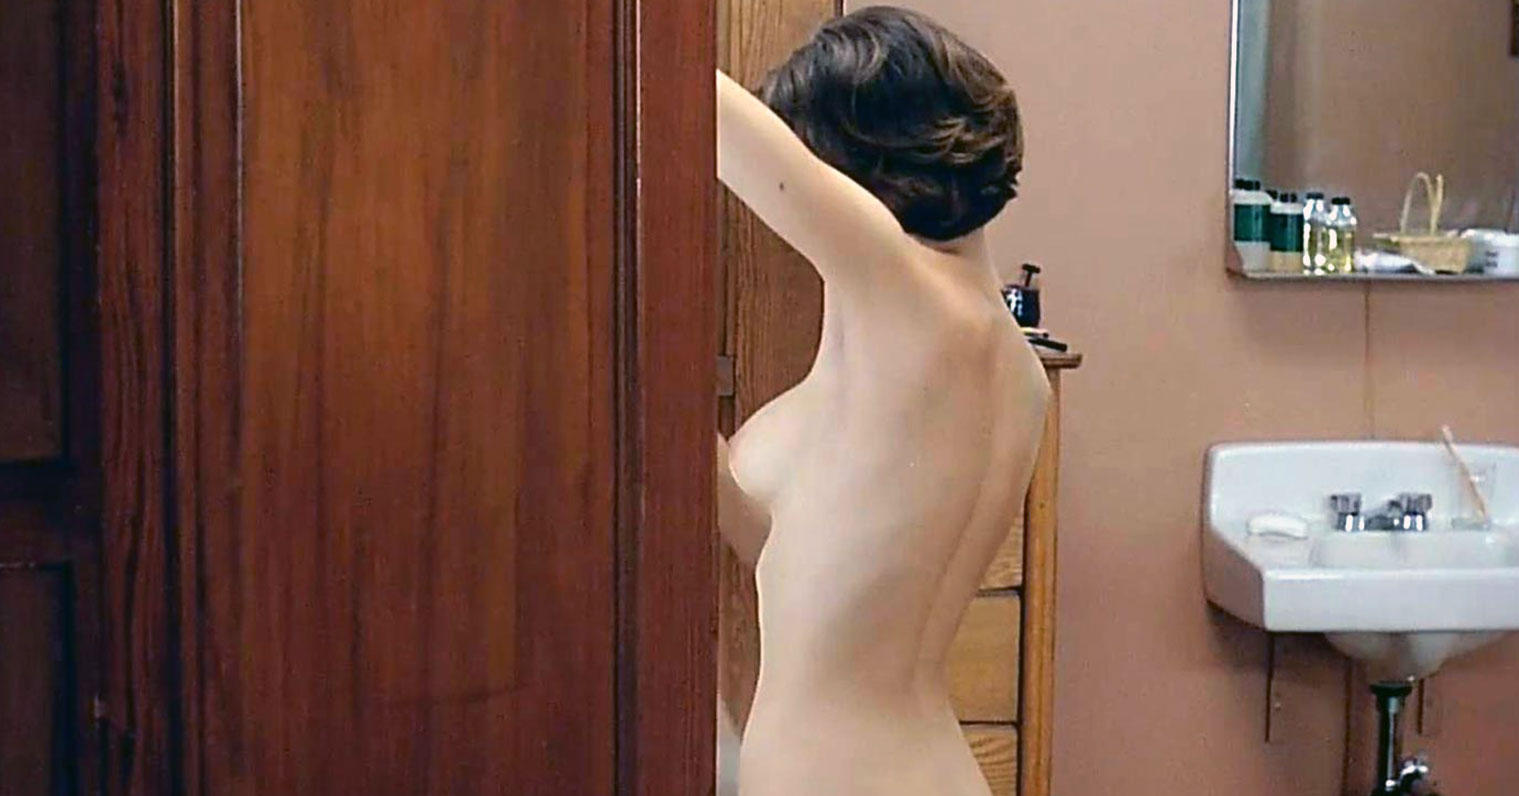 Alyssa Milano Naked Movie Pics and Sexy Feet Photos.